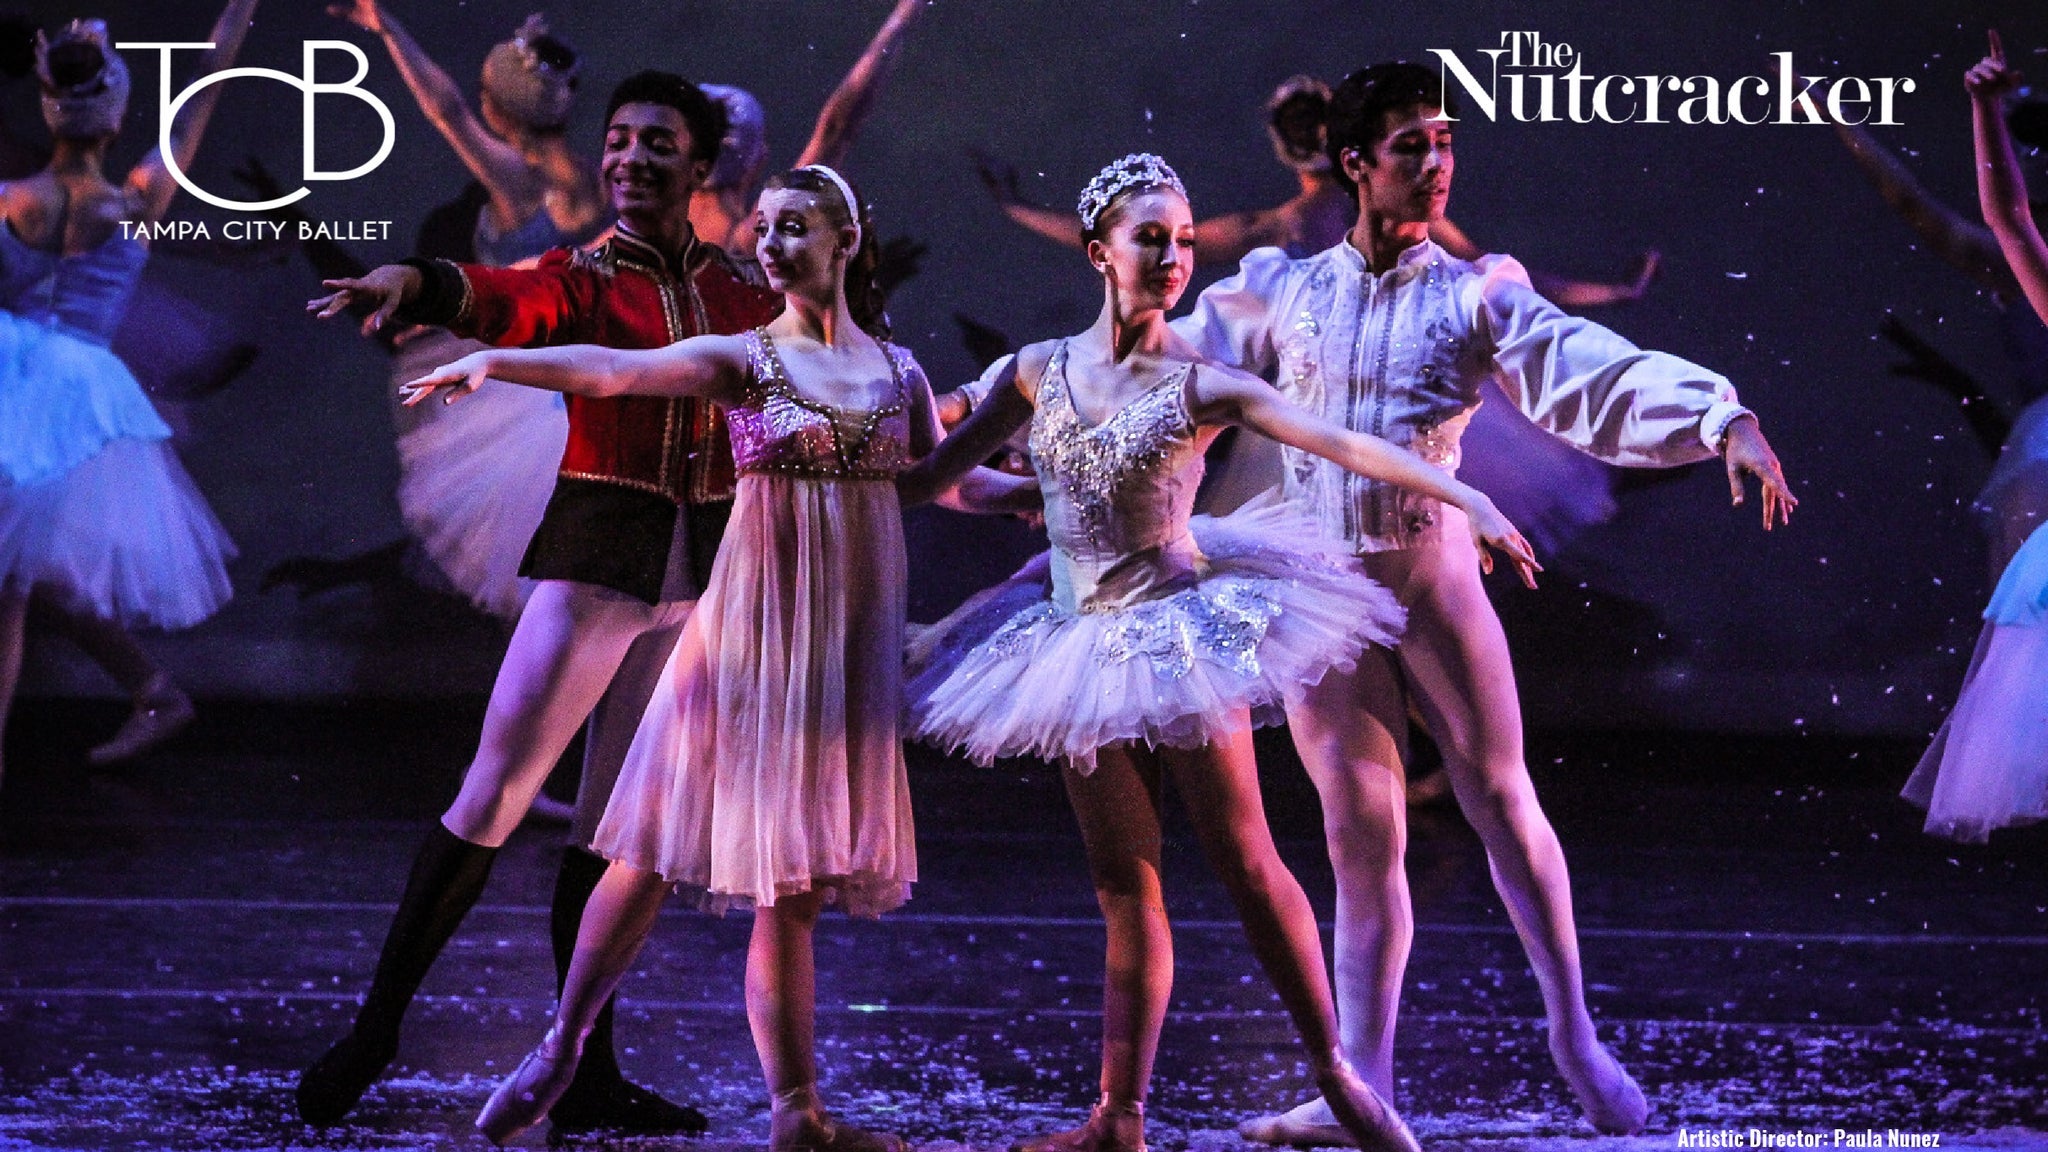 Tampa City Ballet's The Nutcracker